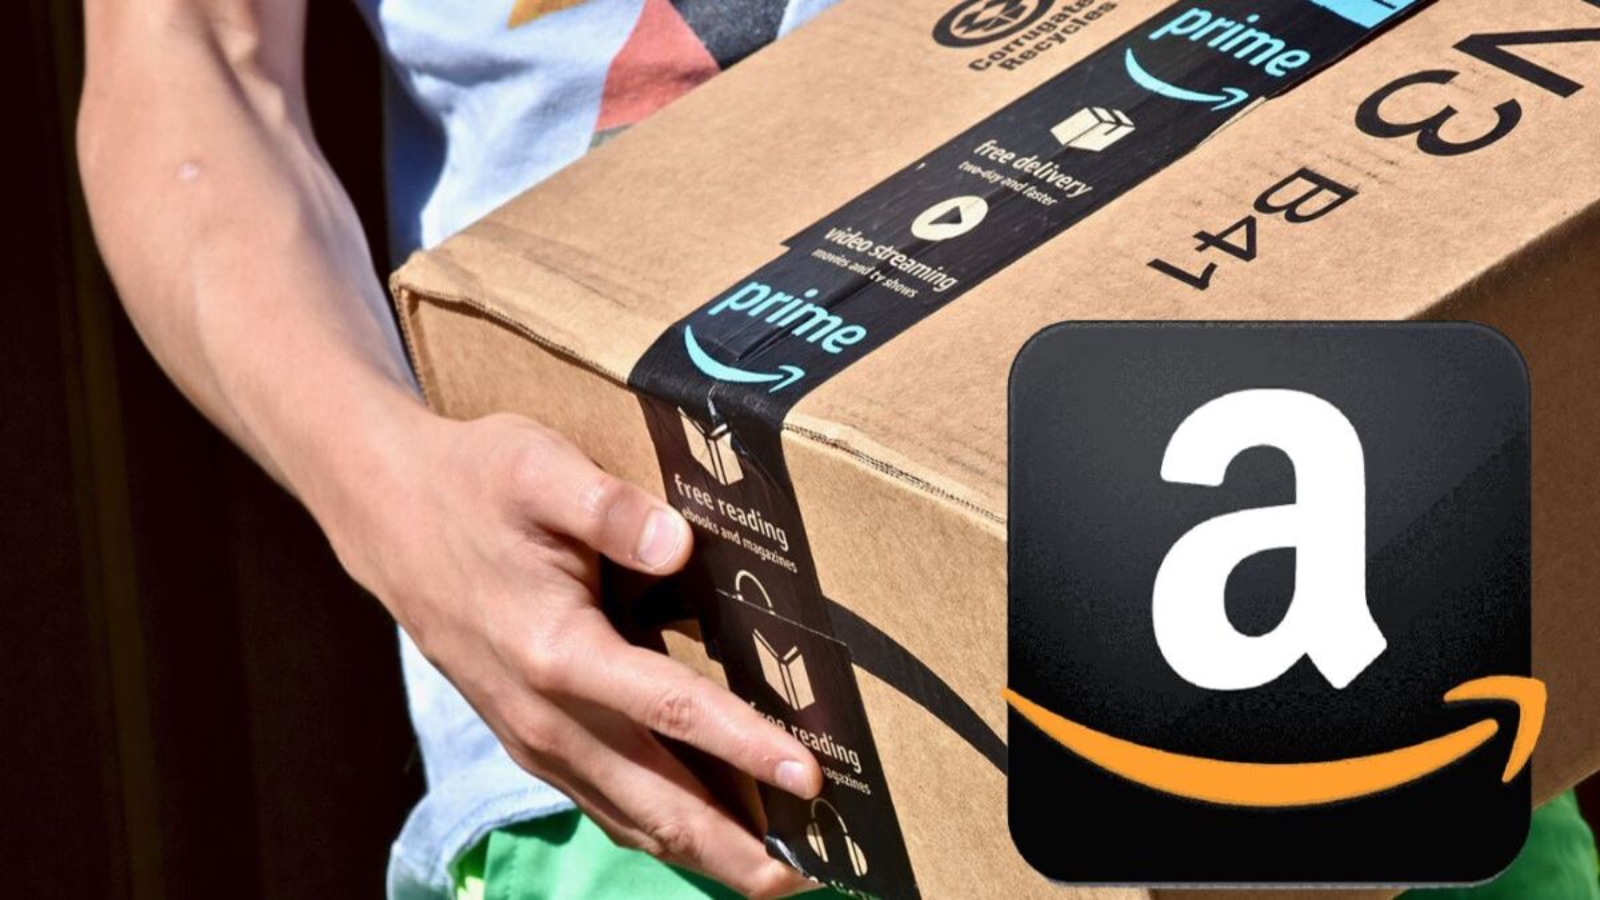 Amazon, FINE SETTIMANA con offerte segrete al 50% di sconto